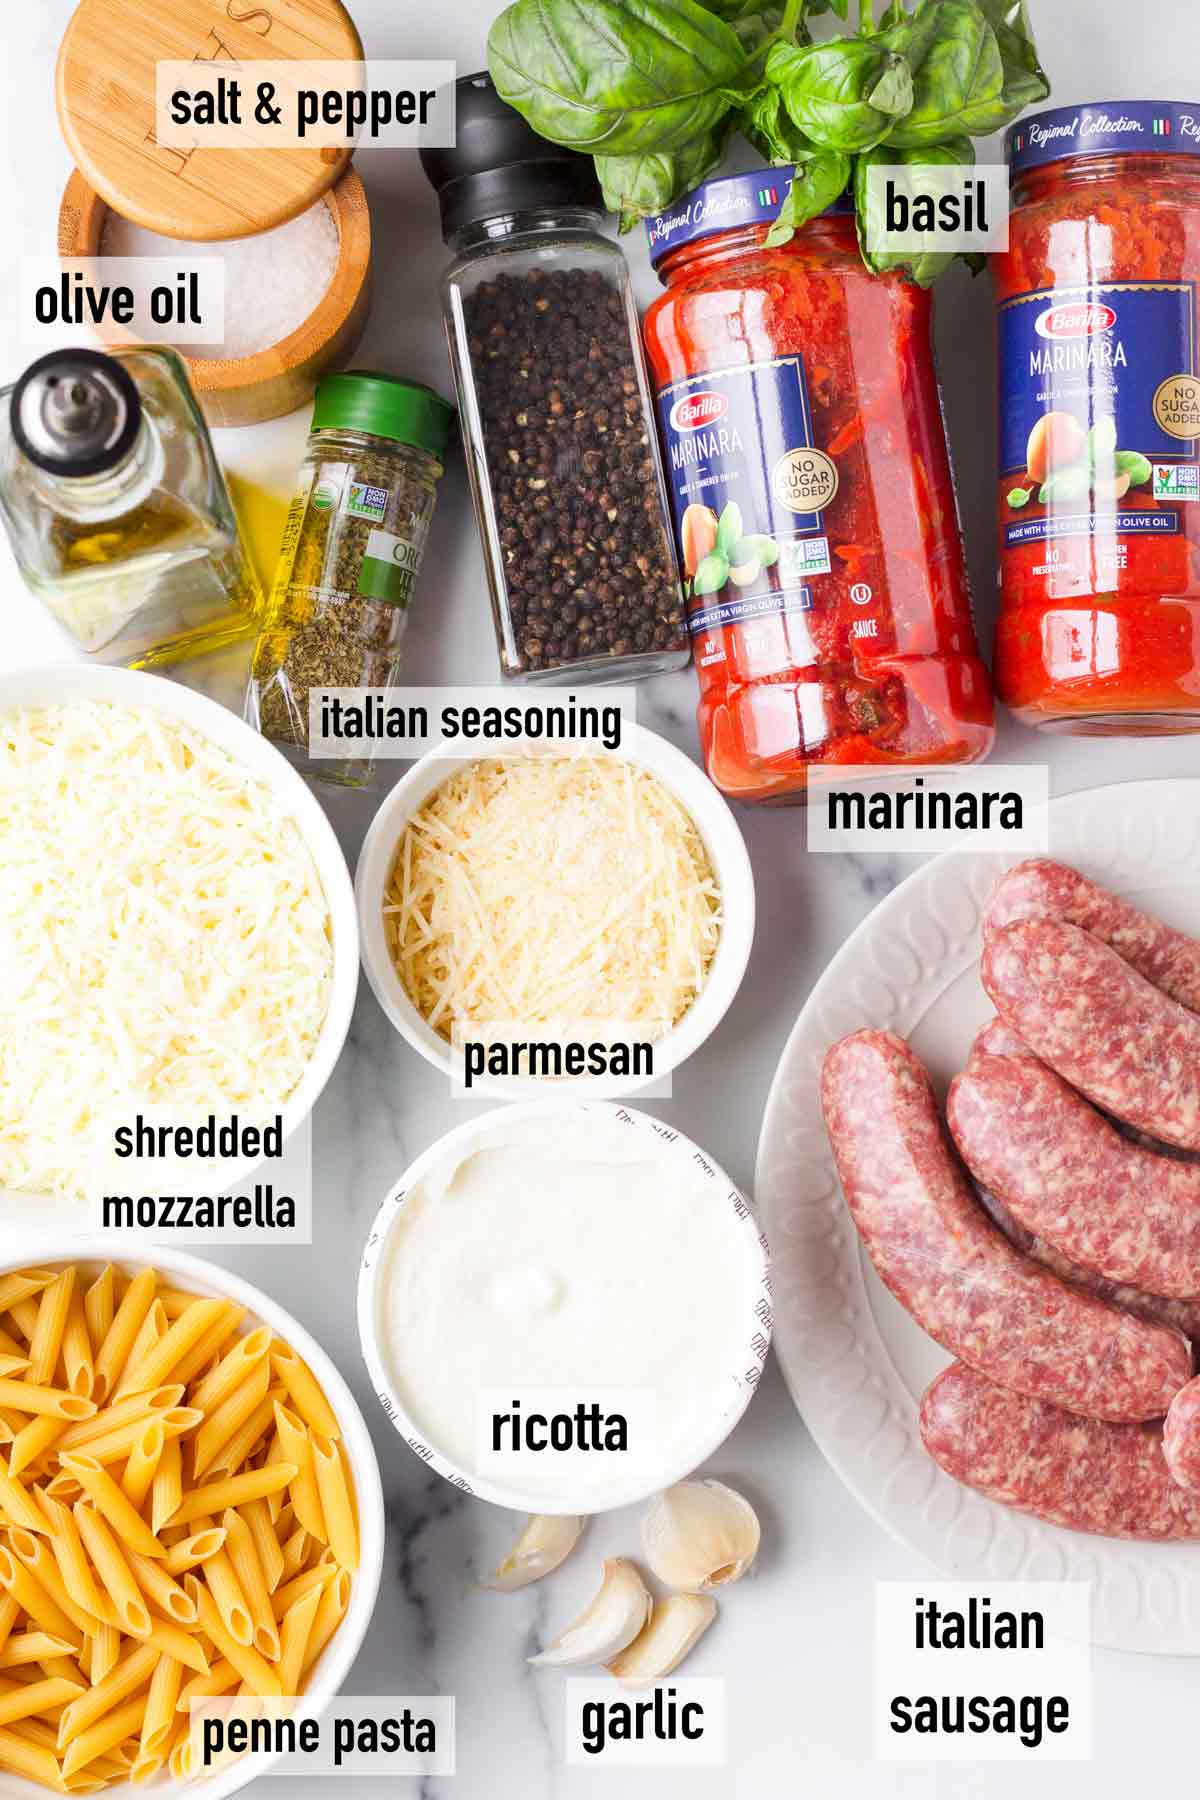 labeled ingredients to make pasta bake with sausage